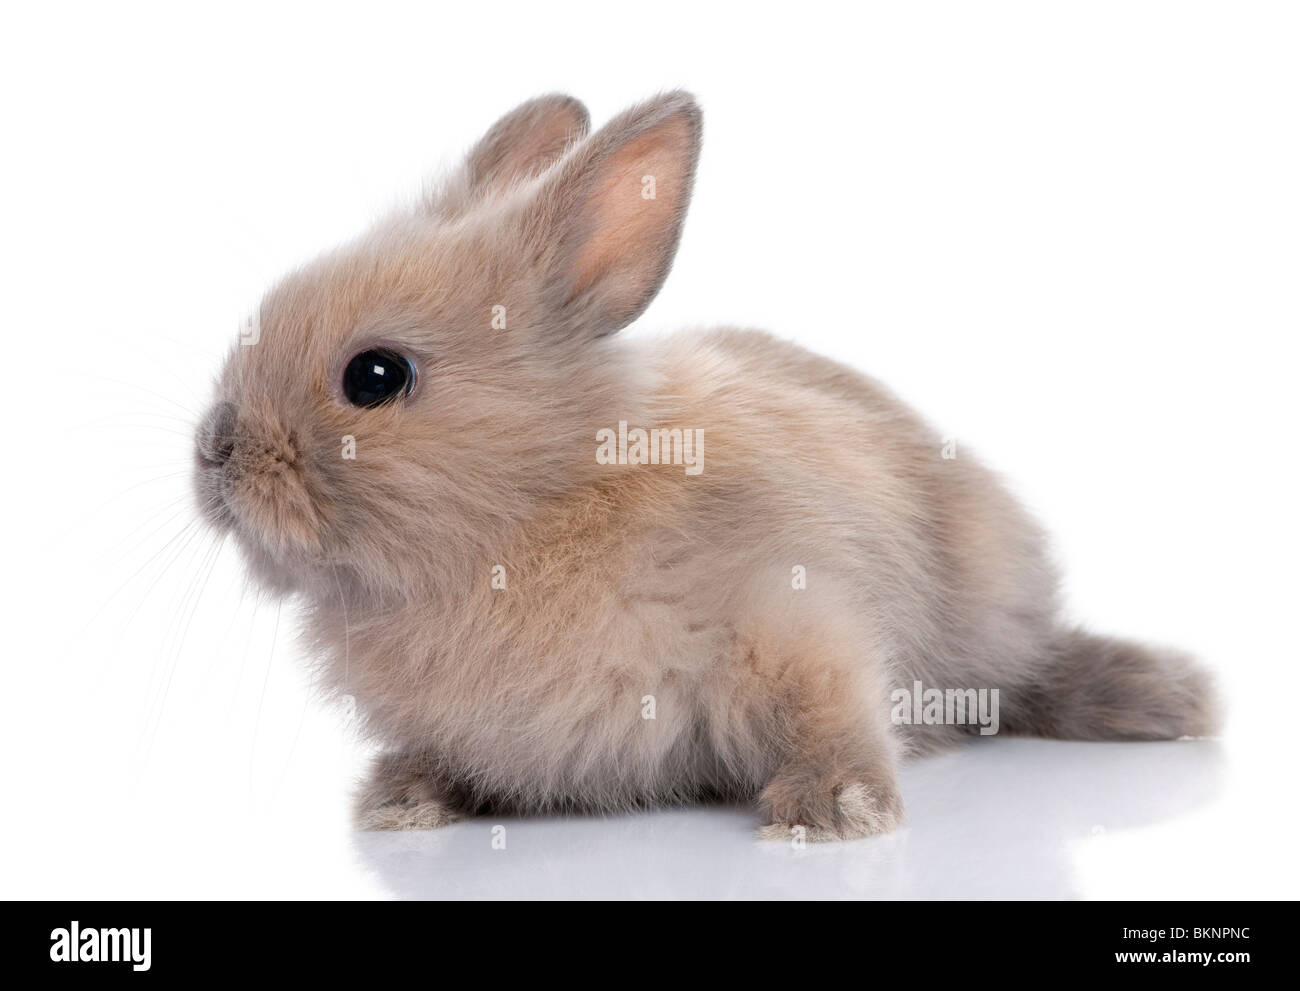 Brown bebé conejo, 5 semanas de edad, delante de un fondo blanco. Foto de stock